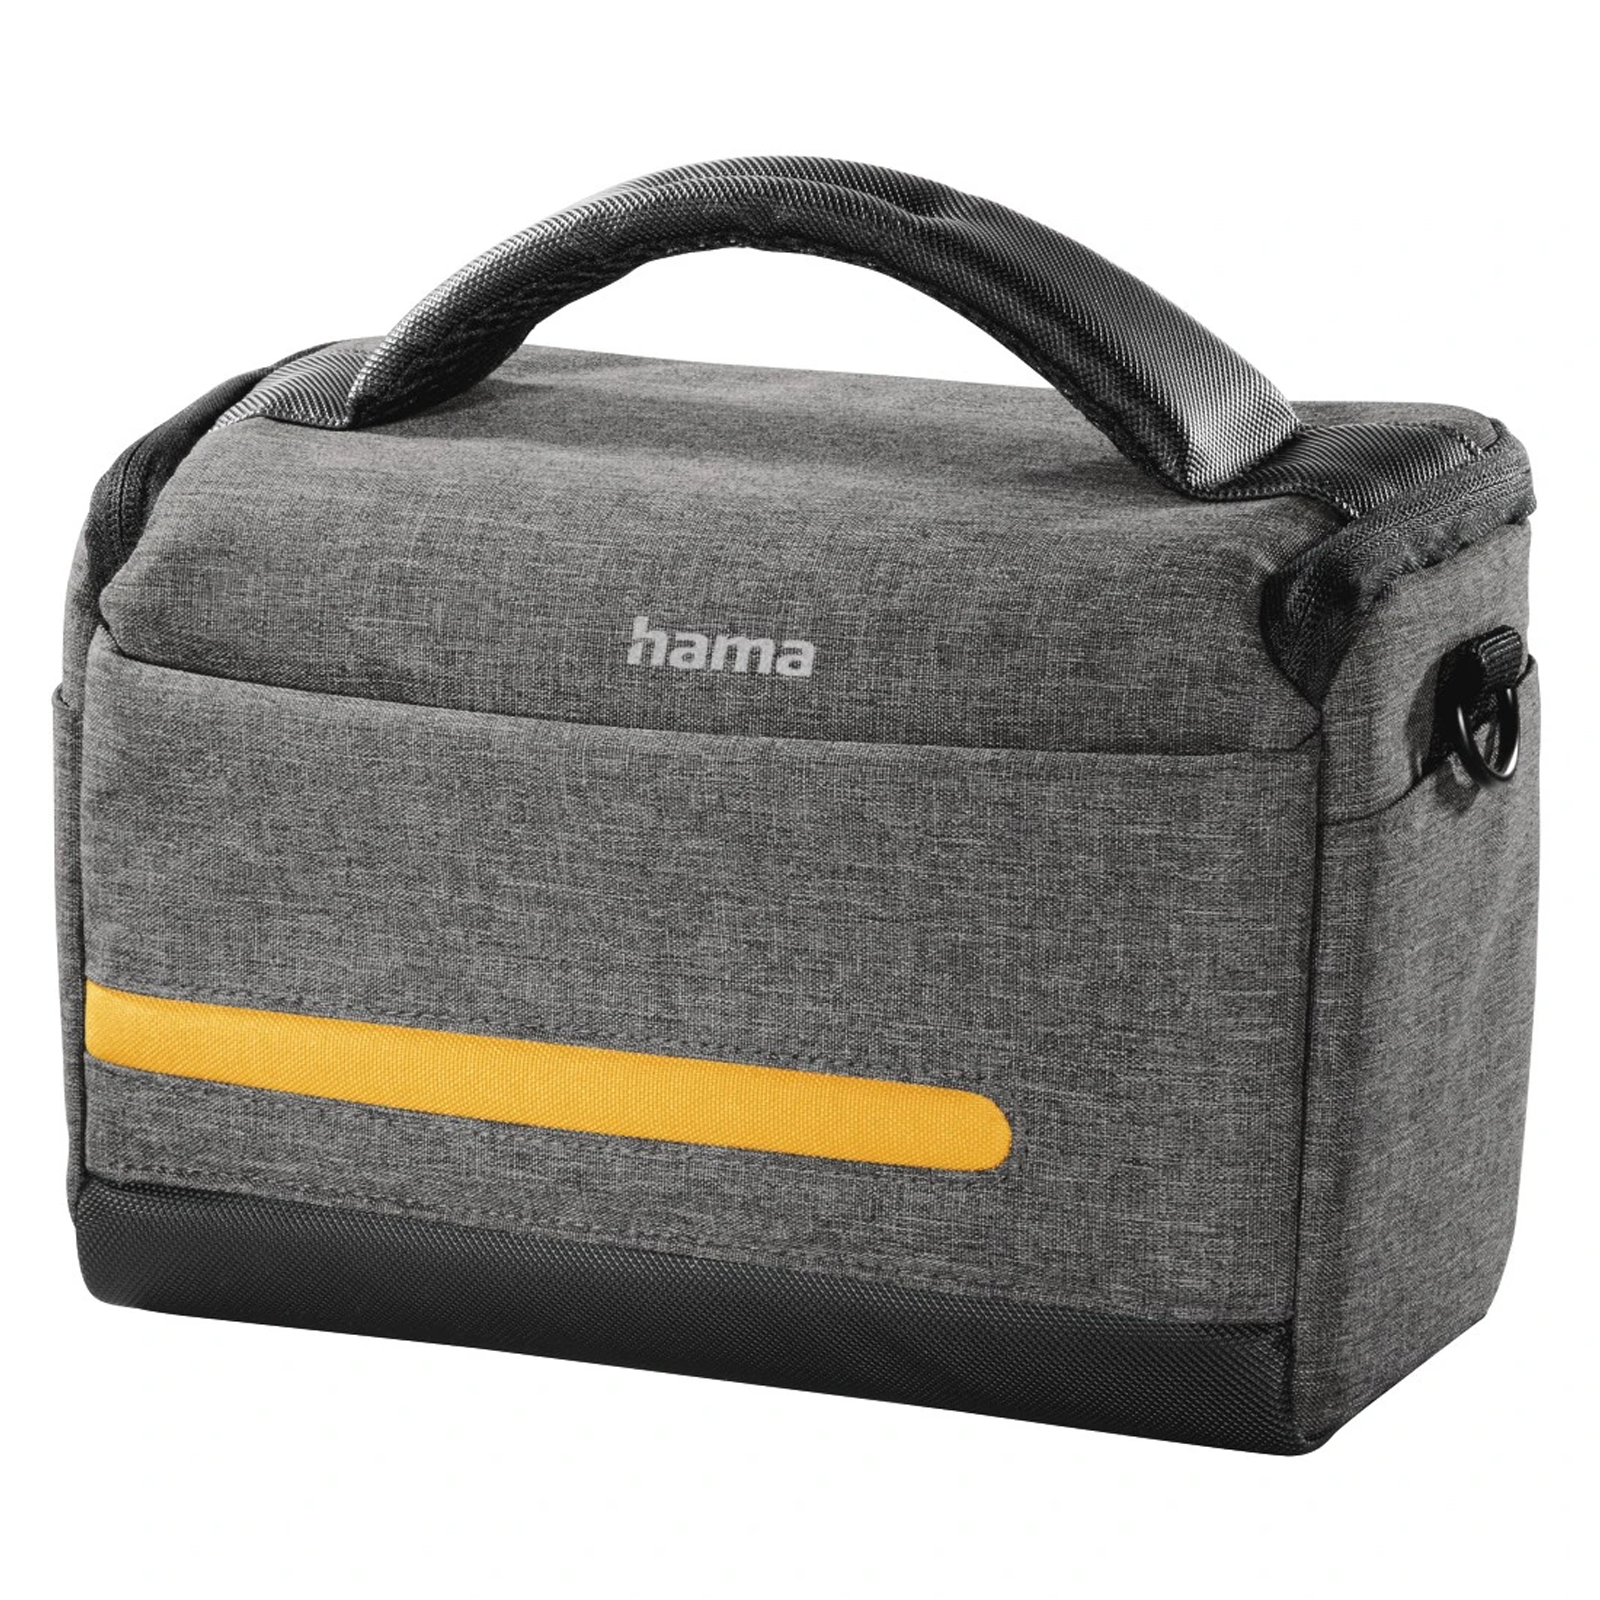 Image of Hama TERRA 135 Camera Bag GREY